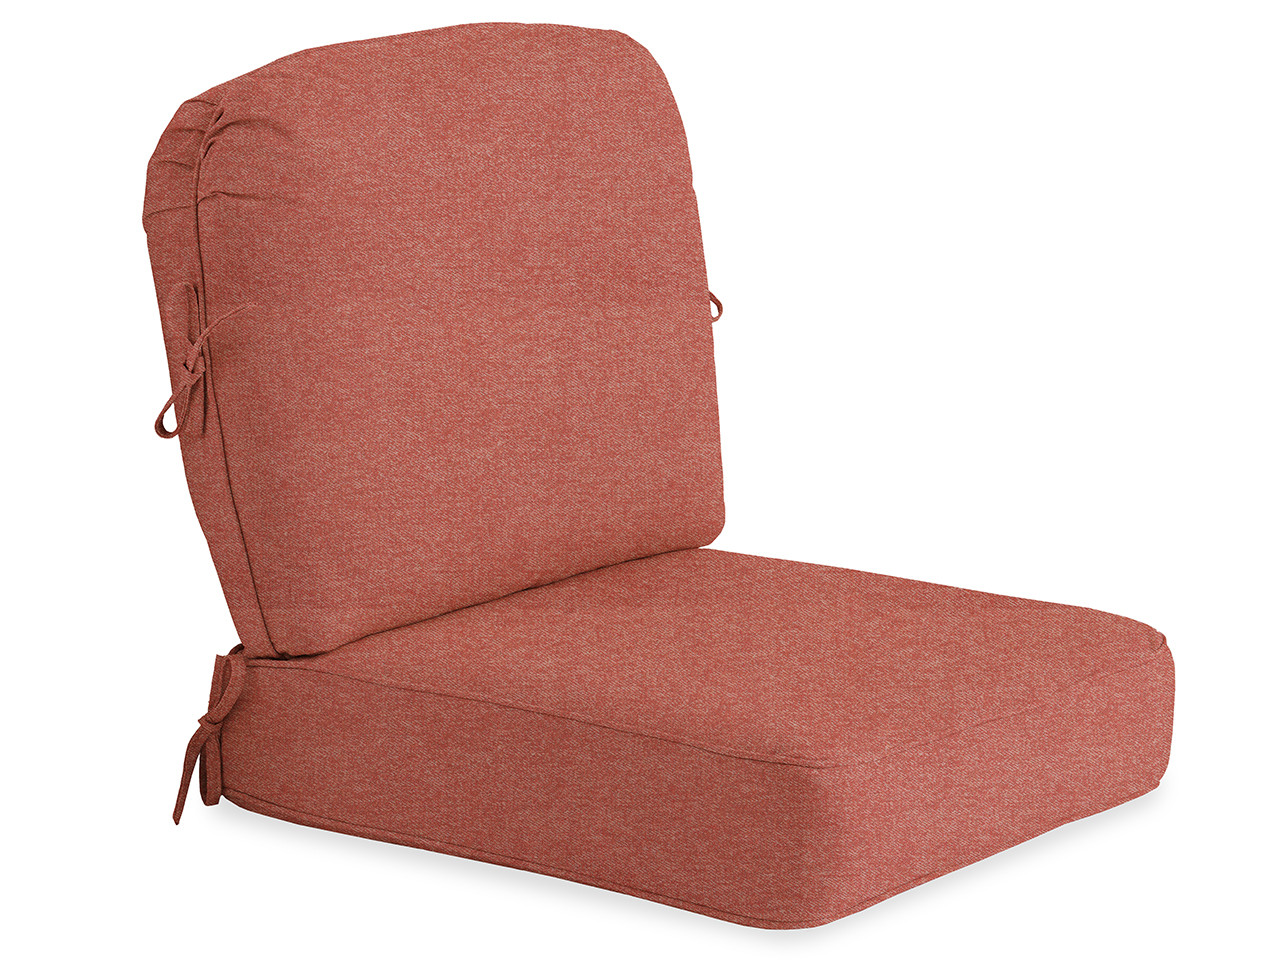 2 Pc. Sunset Sunbelievable Self-Welt Club Chair Cushion